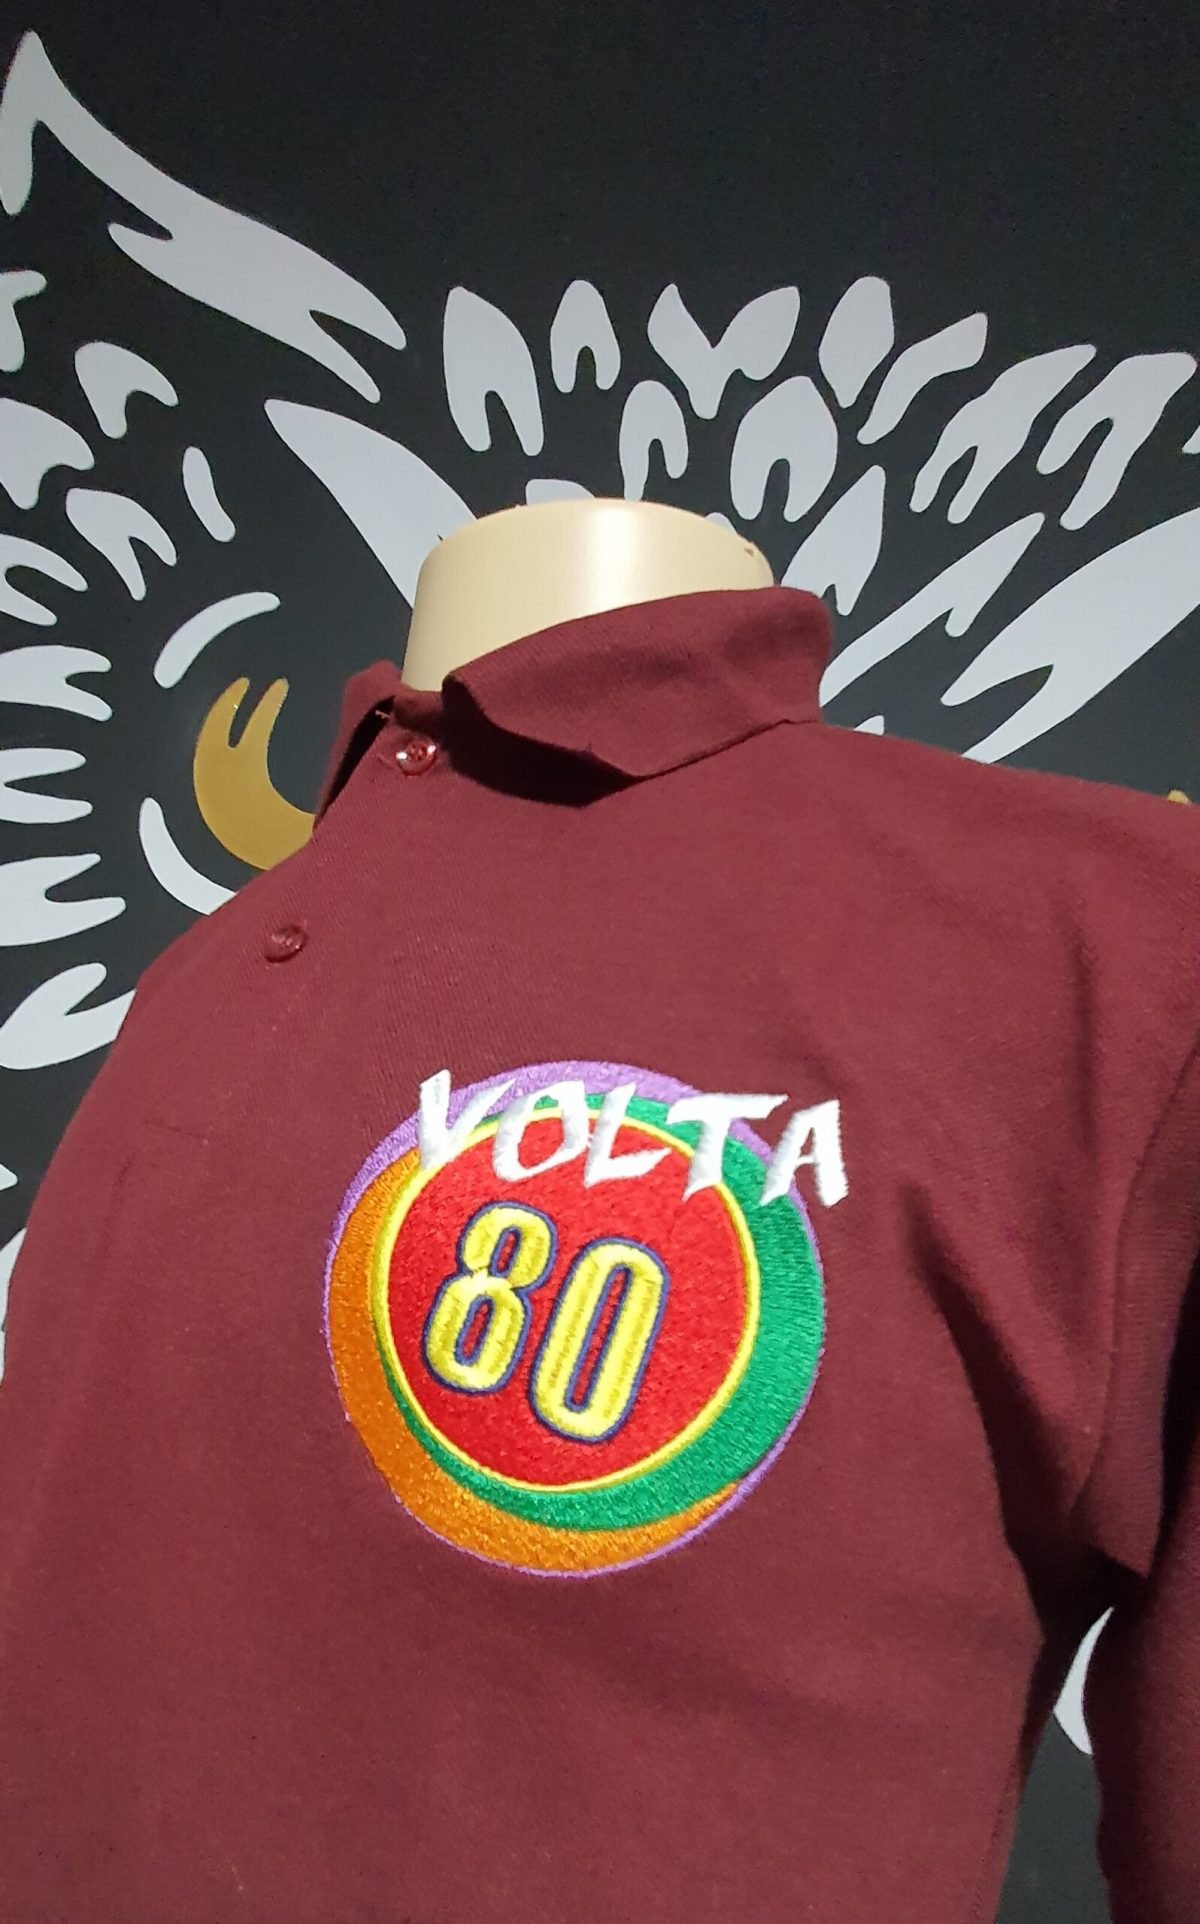 Camisa Polo Bordada da Festa Volta 80 - Logotipo Oficial Volta 80 - by Bordado & Cia - @bordado.cia @volta80